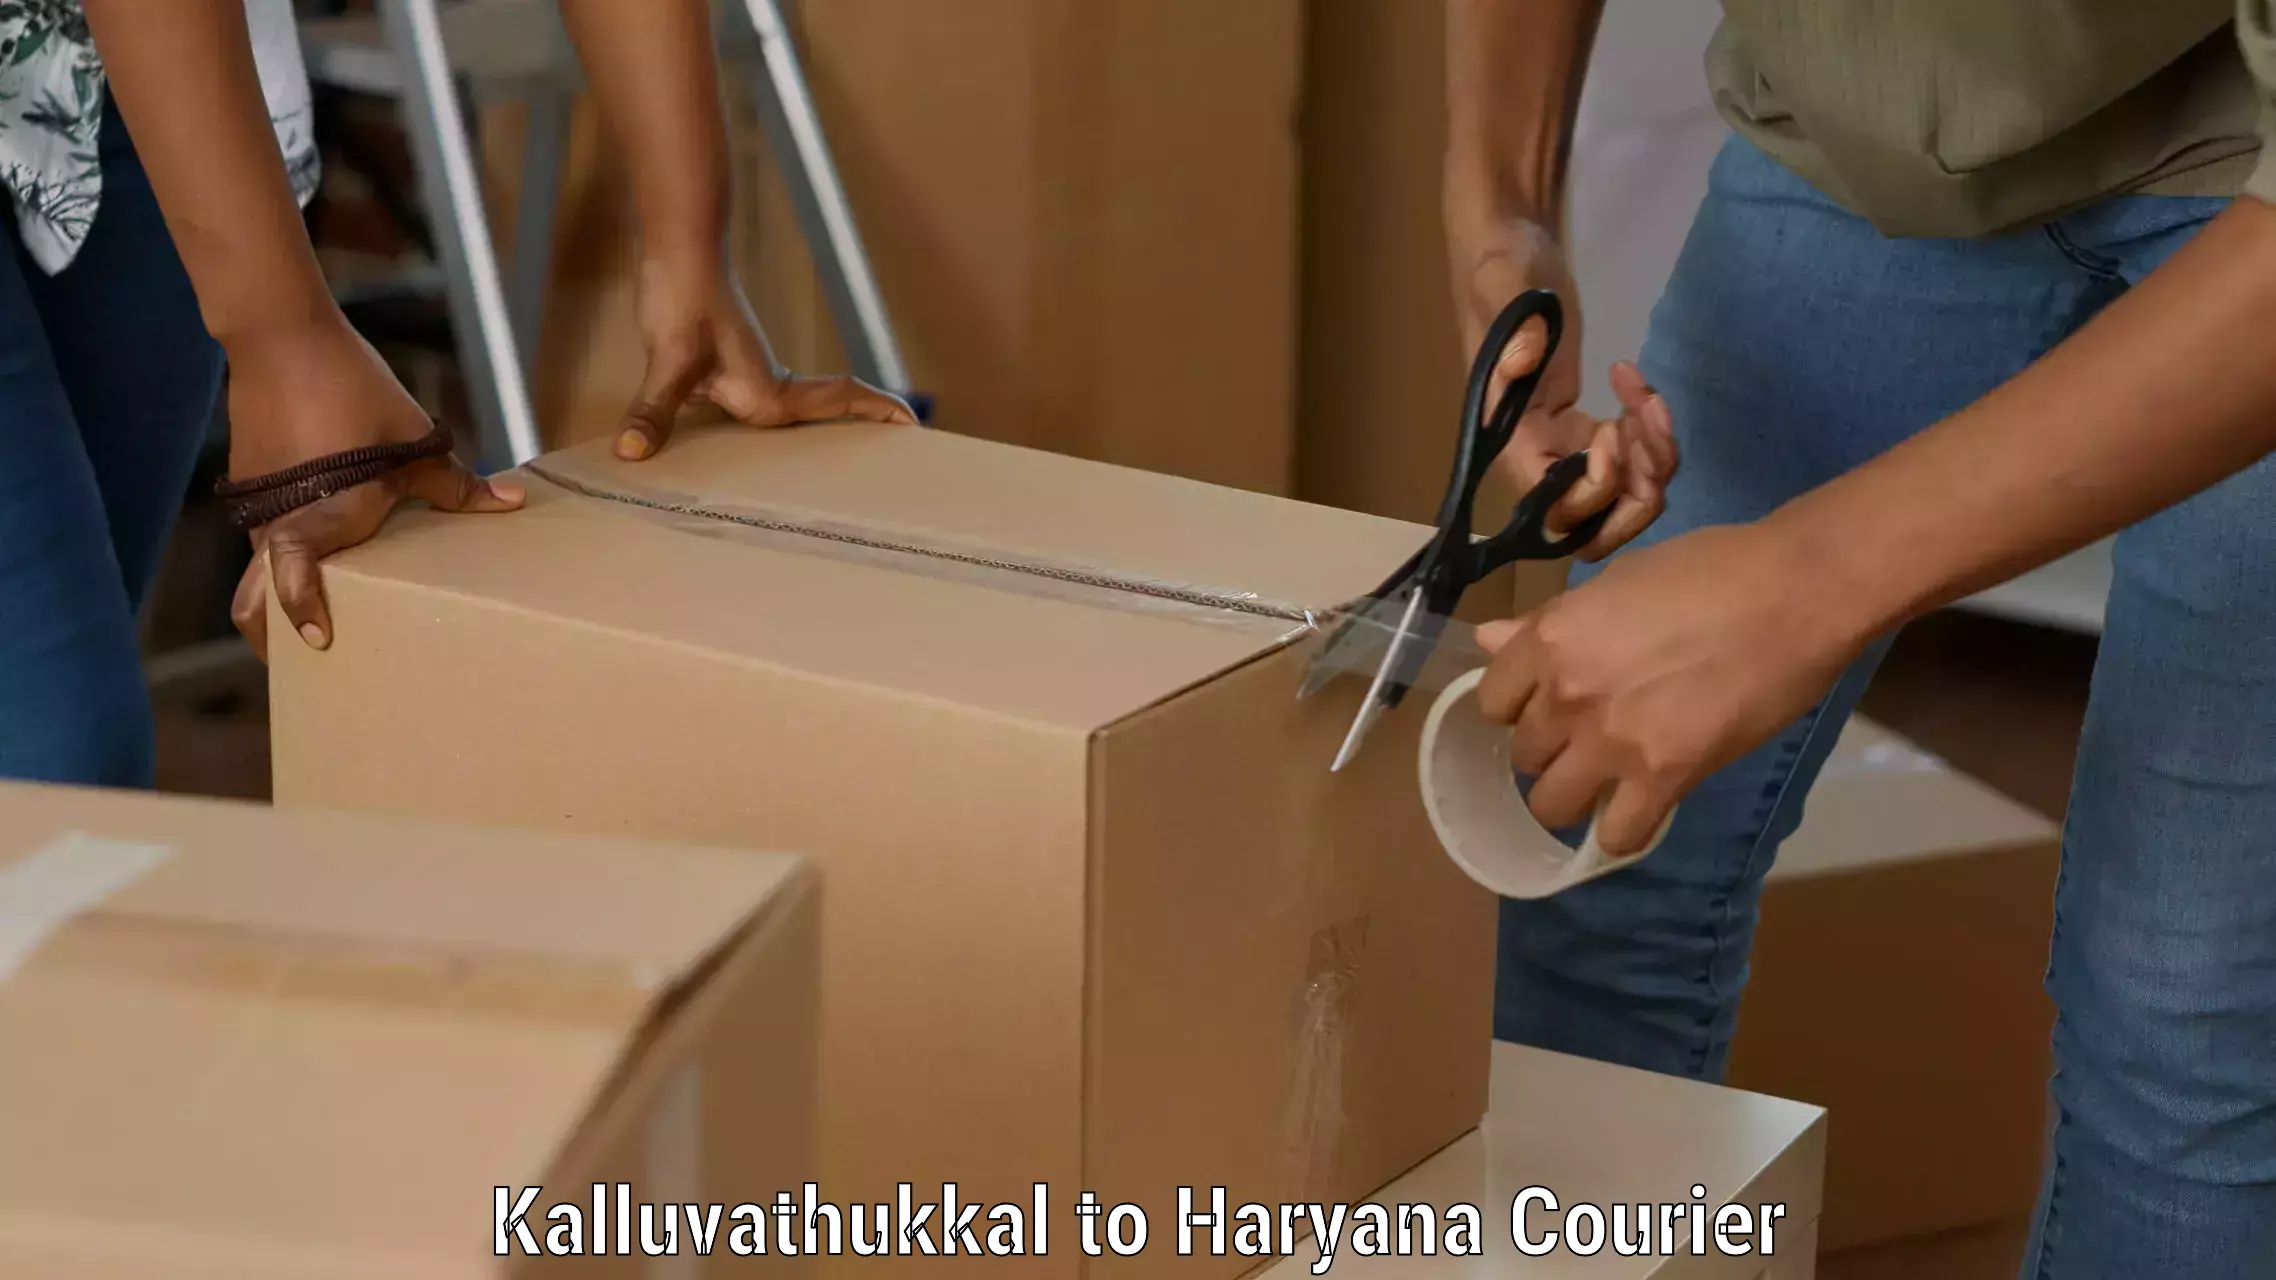 Nationwide shipping coverage Kalluvathukkal to Haryana